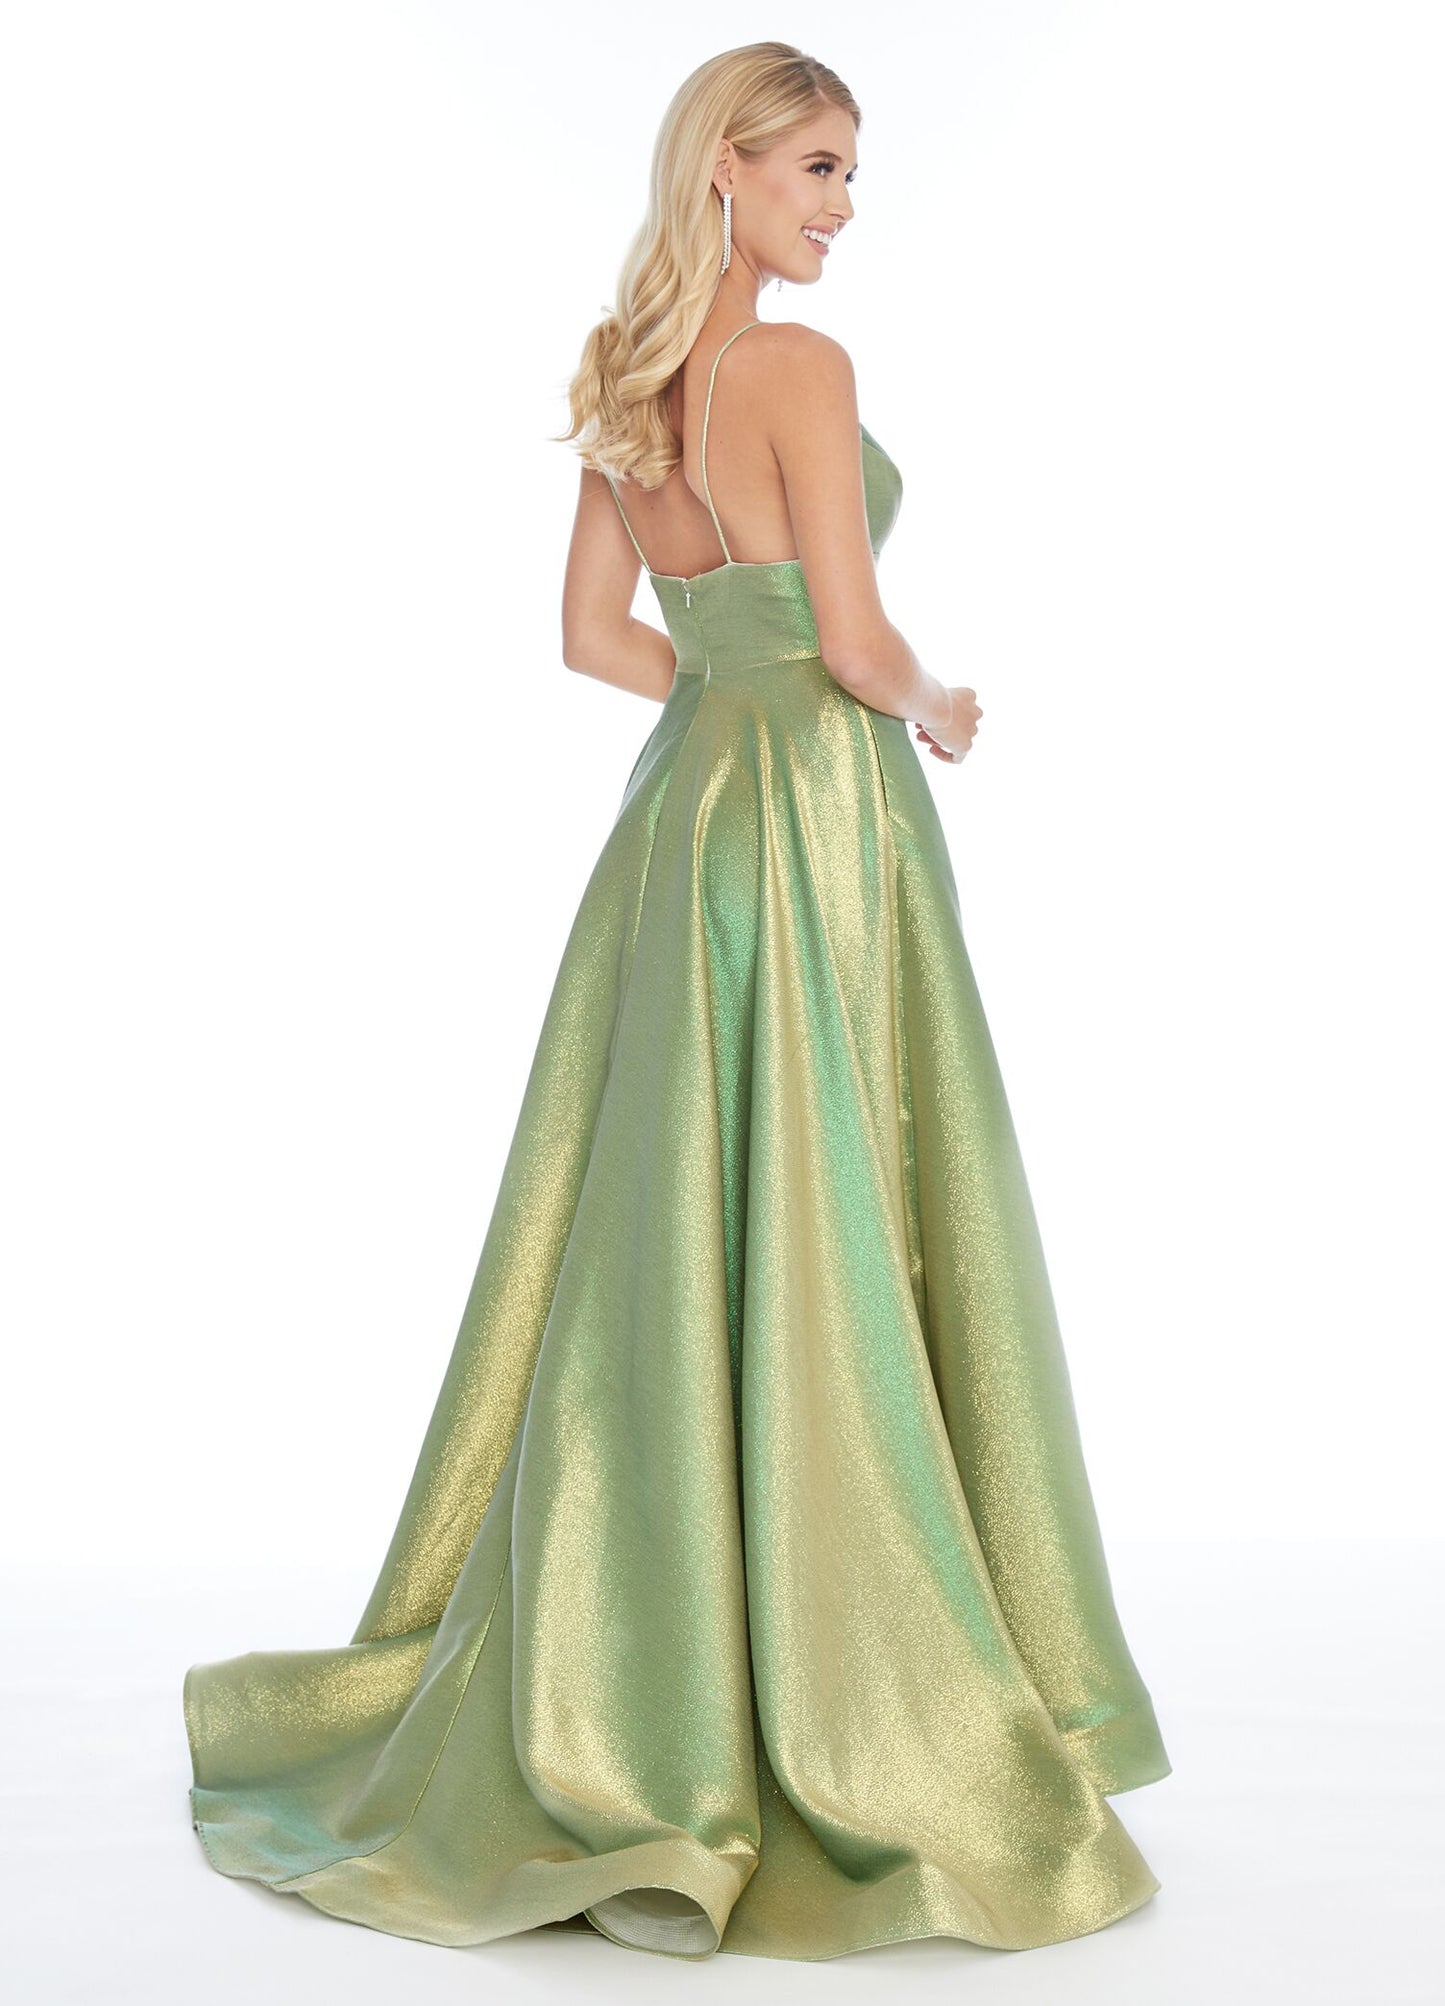 Ashley Lauren 1937 Hot Pink/Gold Prom Dress sz 4,6,8 Metallic shimmer v neckline A line